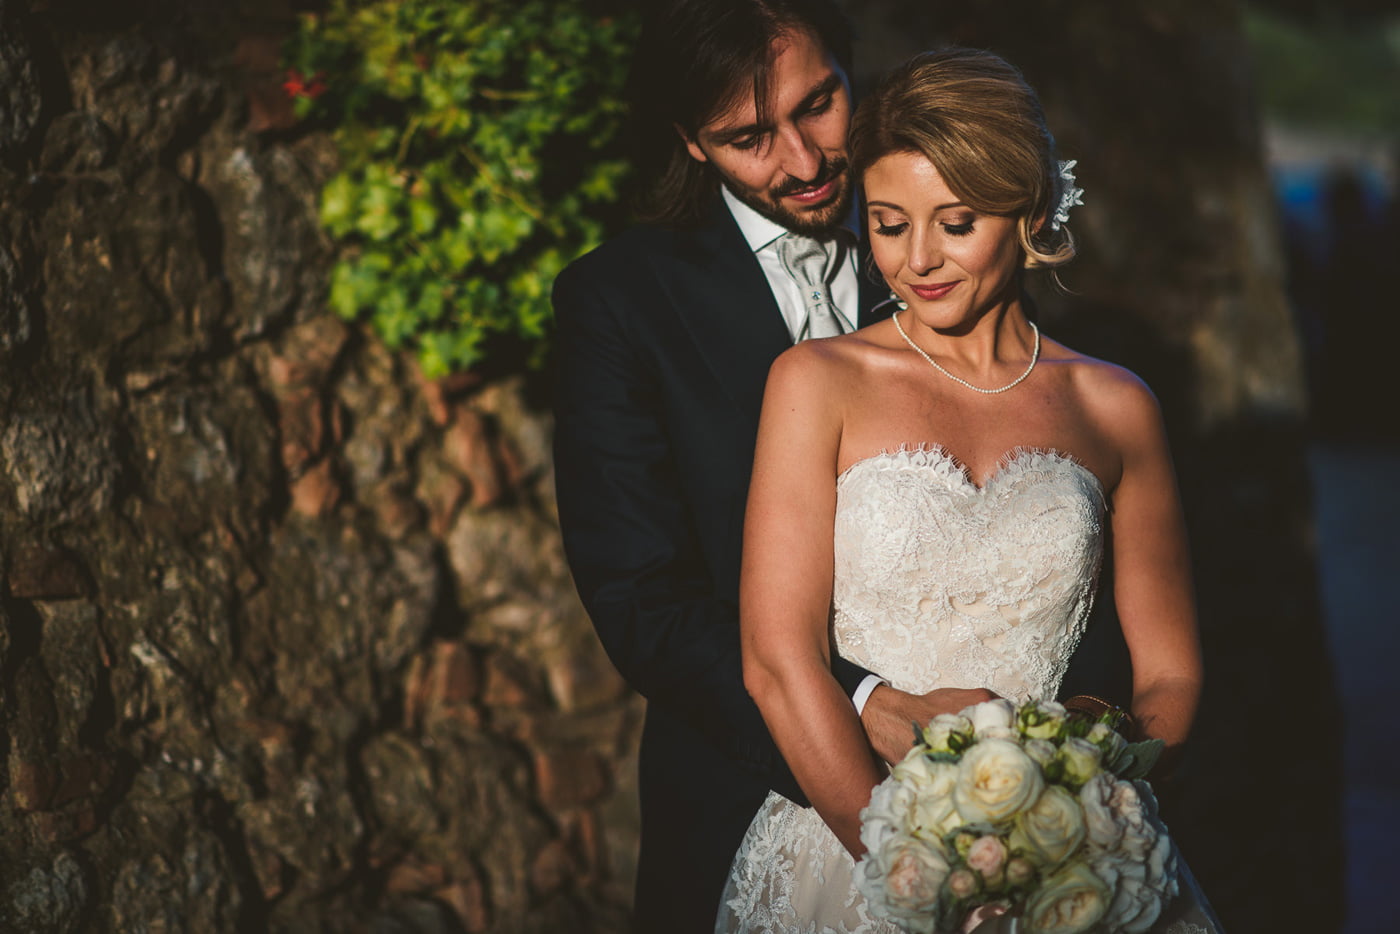 Andrea & Francesca | Wedding at Borgo San Luigi by Federico Pannacci 64